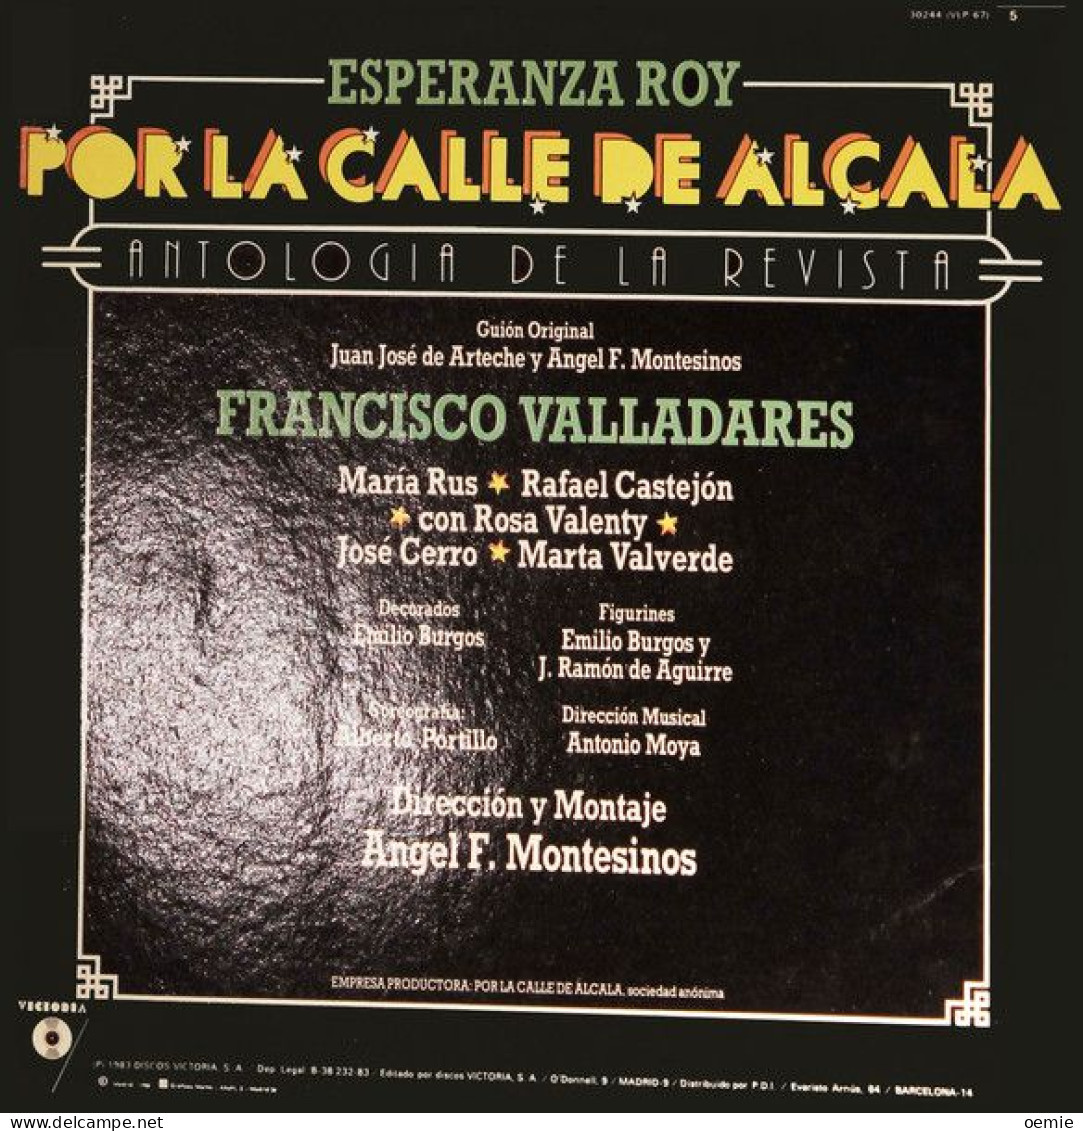 ANTOLOGIA DE LA REVISTA  ESPERANZA ROY  POR LA CALLE DE ALCALA  FRANCISCO VALLADARES - Autres - Musique Espagnole